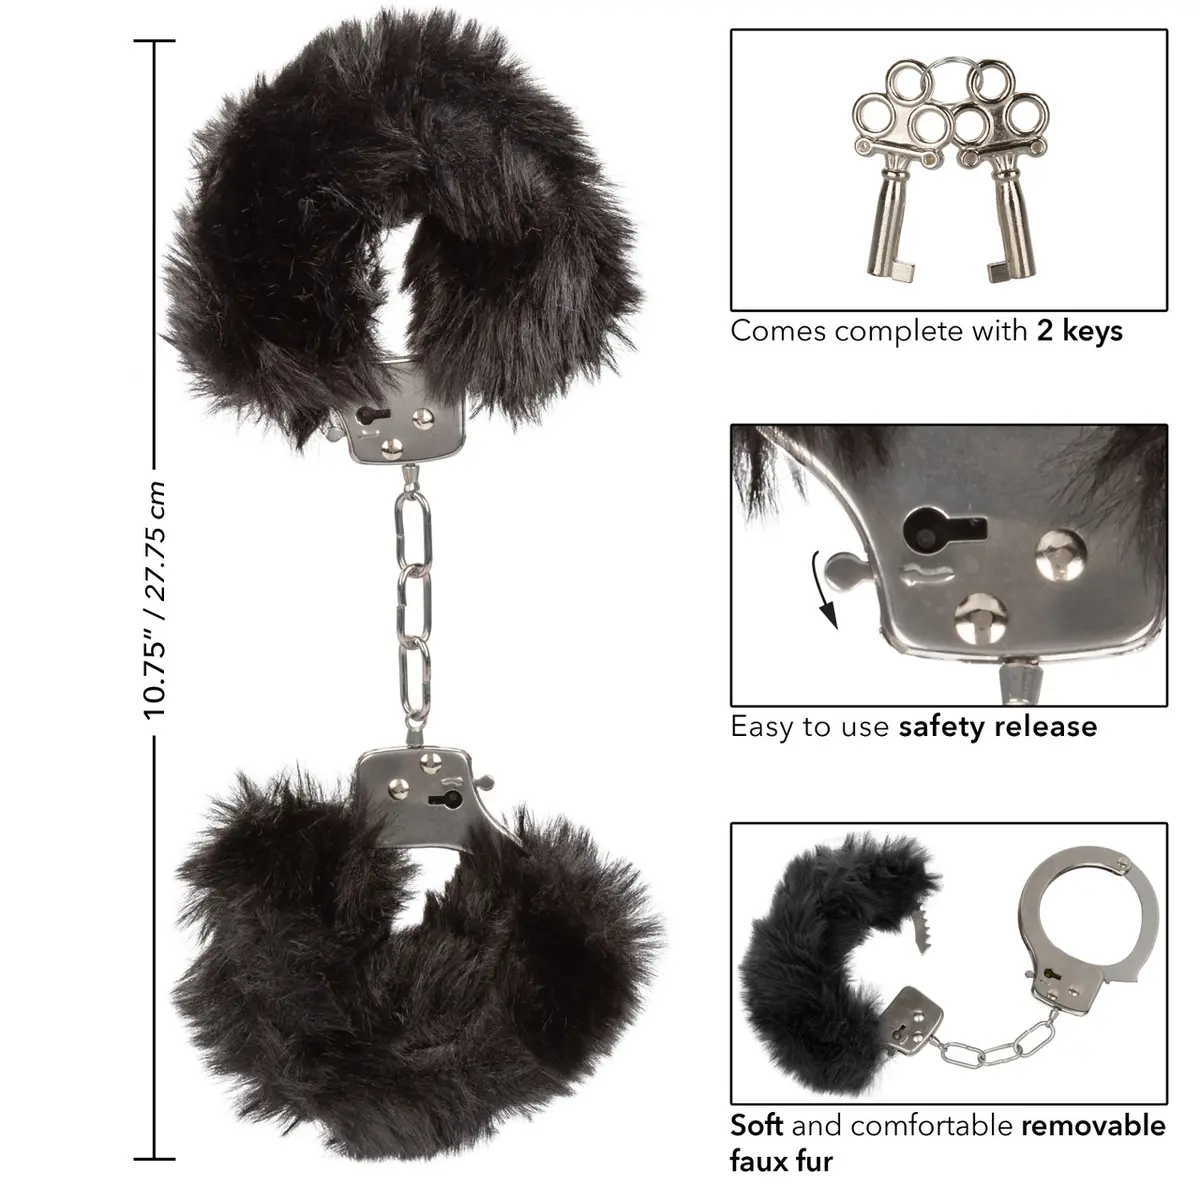 4. Calexotics - Ultra Fluffy Furry Handcuffs - Black